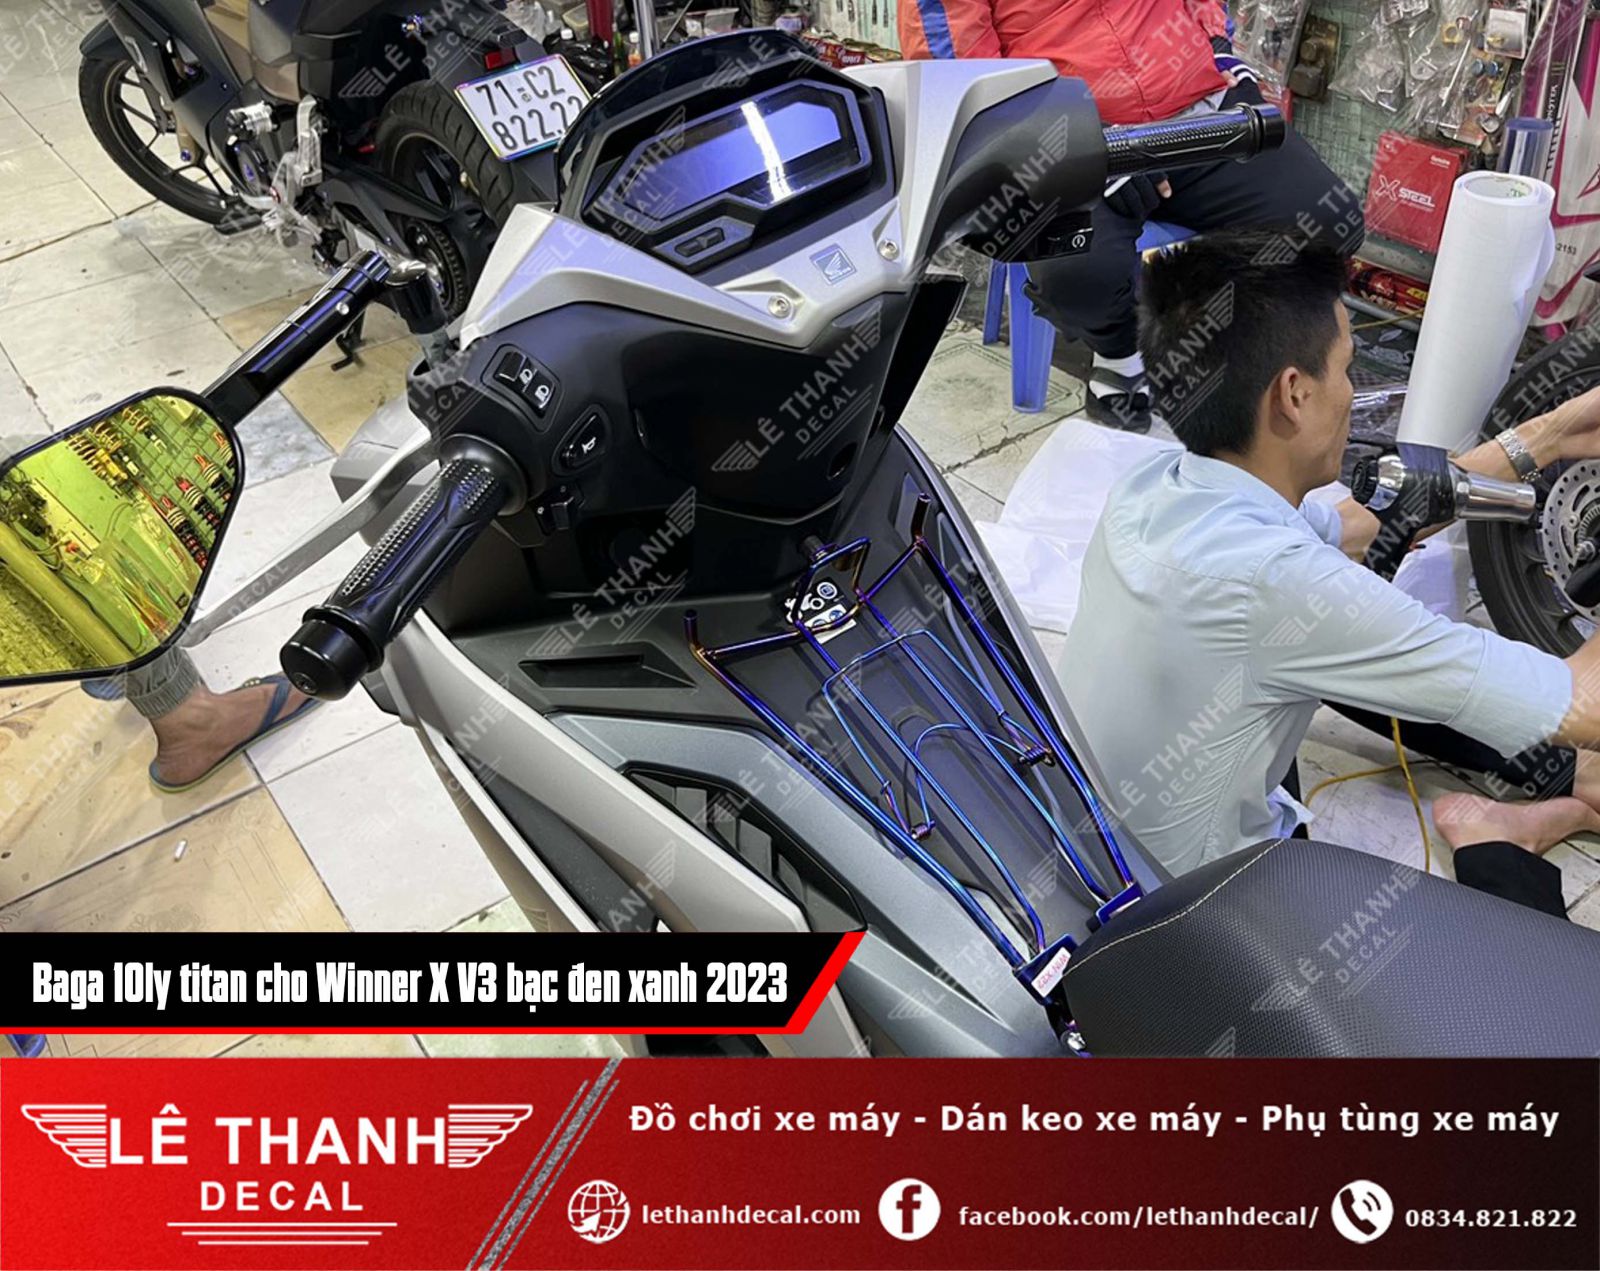 baga titan 10ly cho xe máy Winner X V3 2023 bạc đen xanh